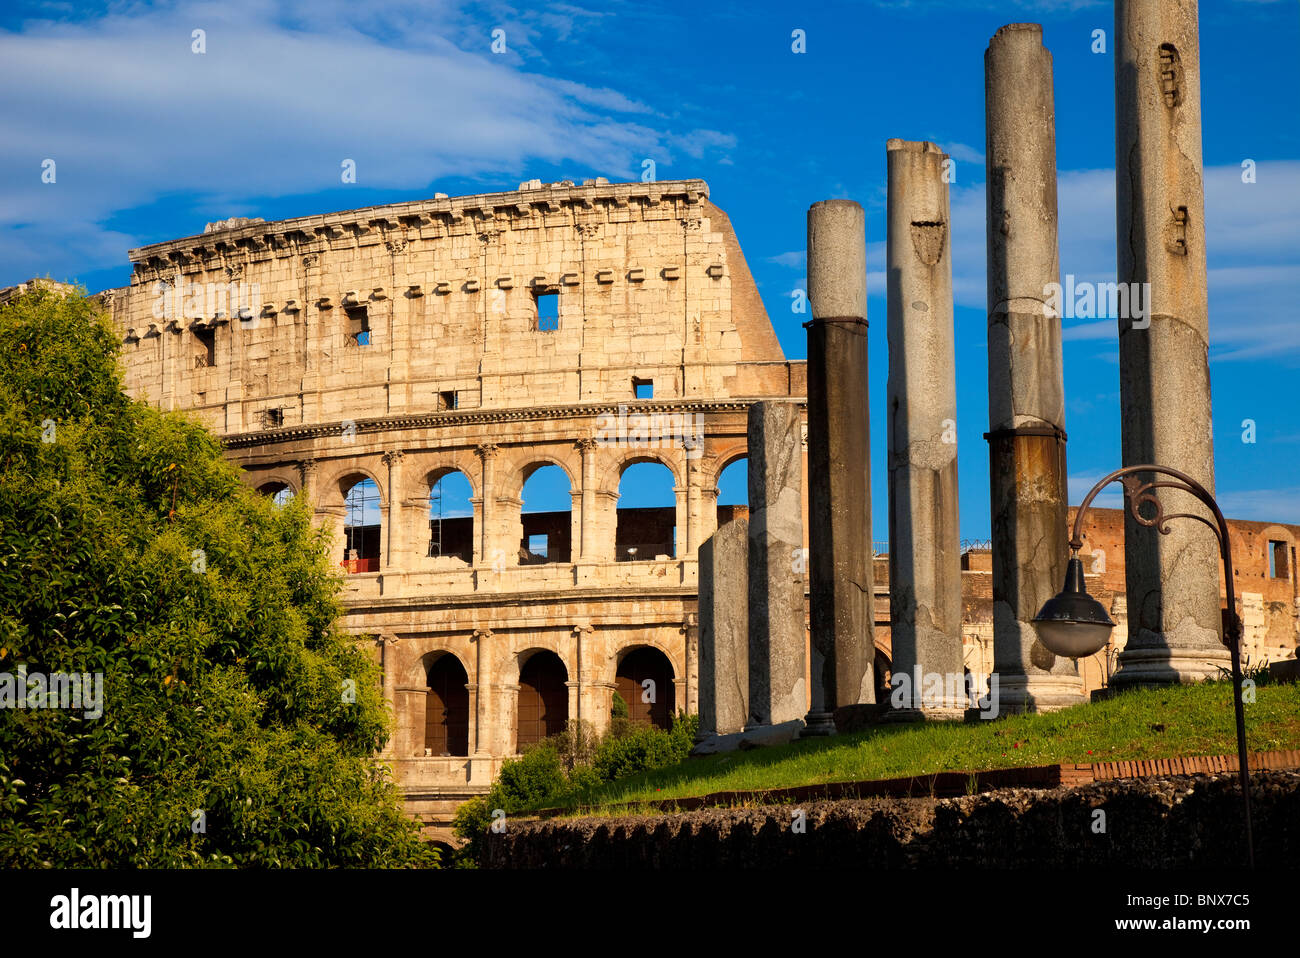 Colonnes antiques menant au Colisée, Rome Lazio Italie Banque D'Images